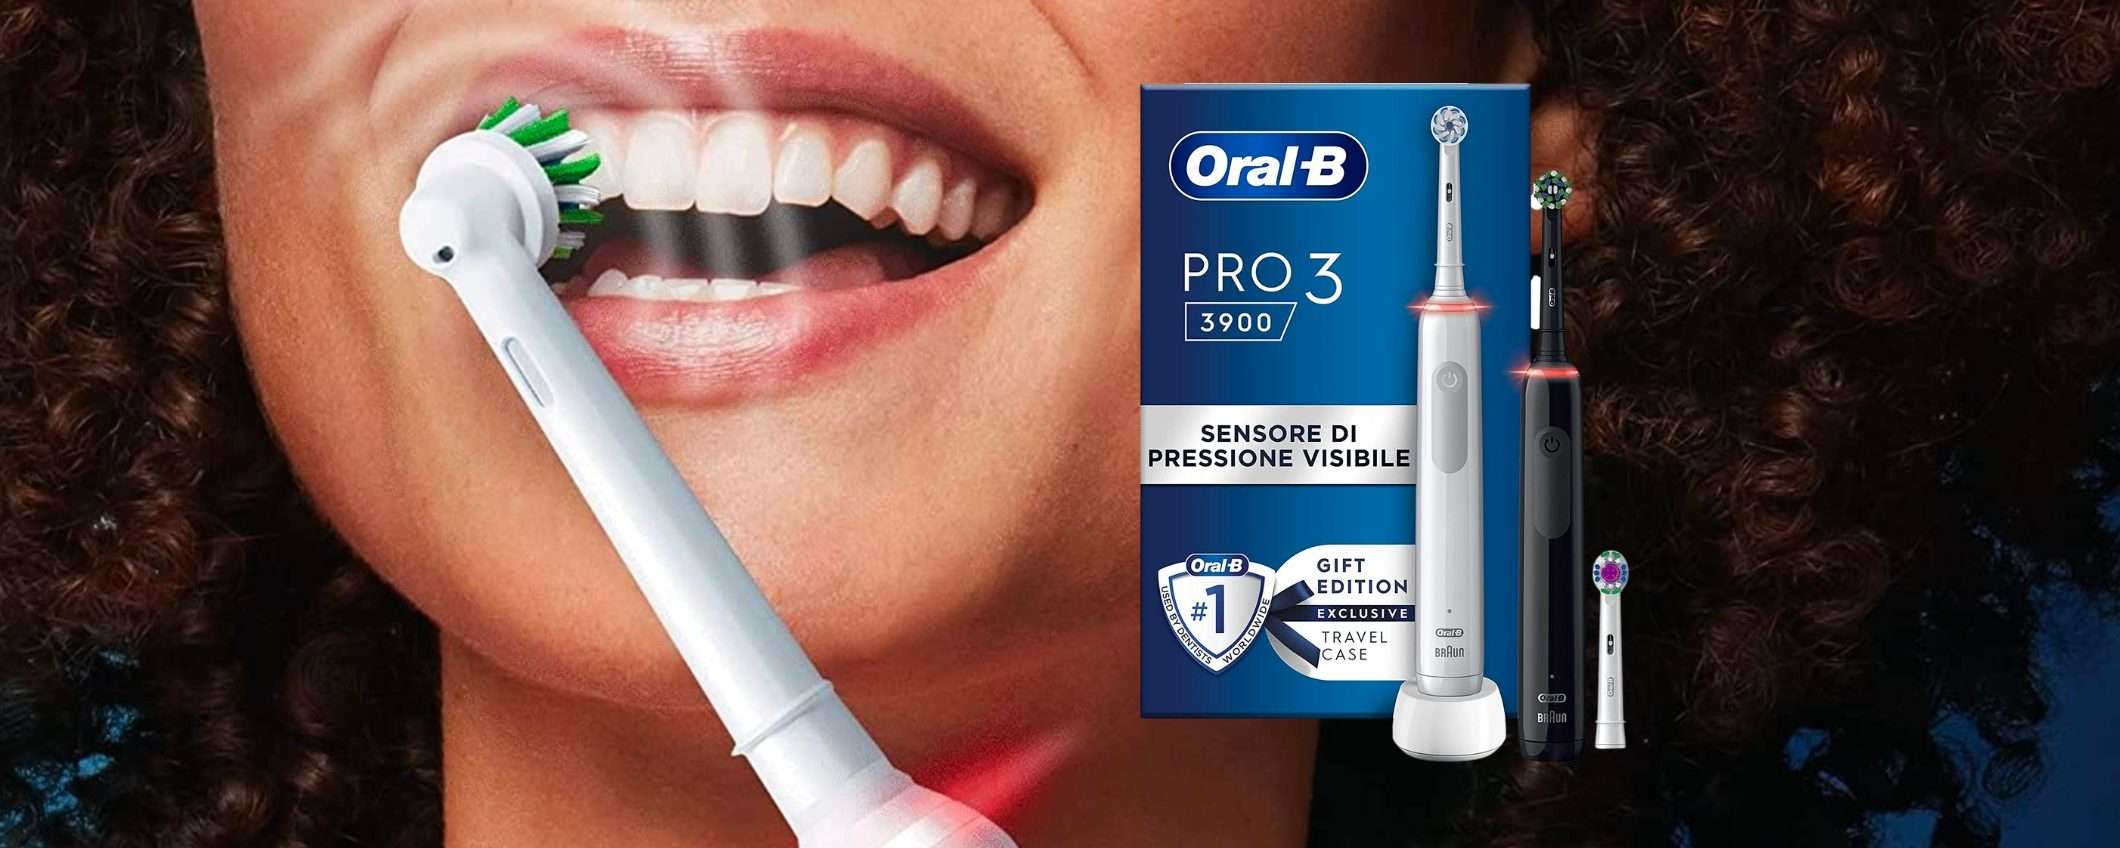 2 spazzolini elettrici Oral-B per tutta la famiglia: prezzo MINI su Amazon